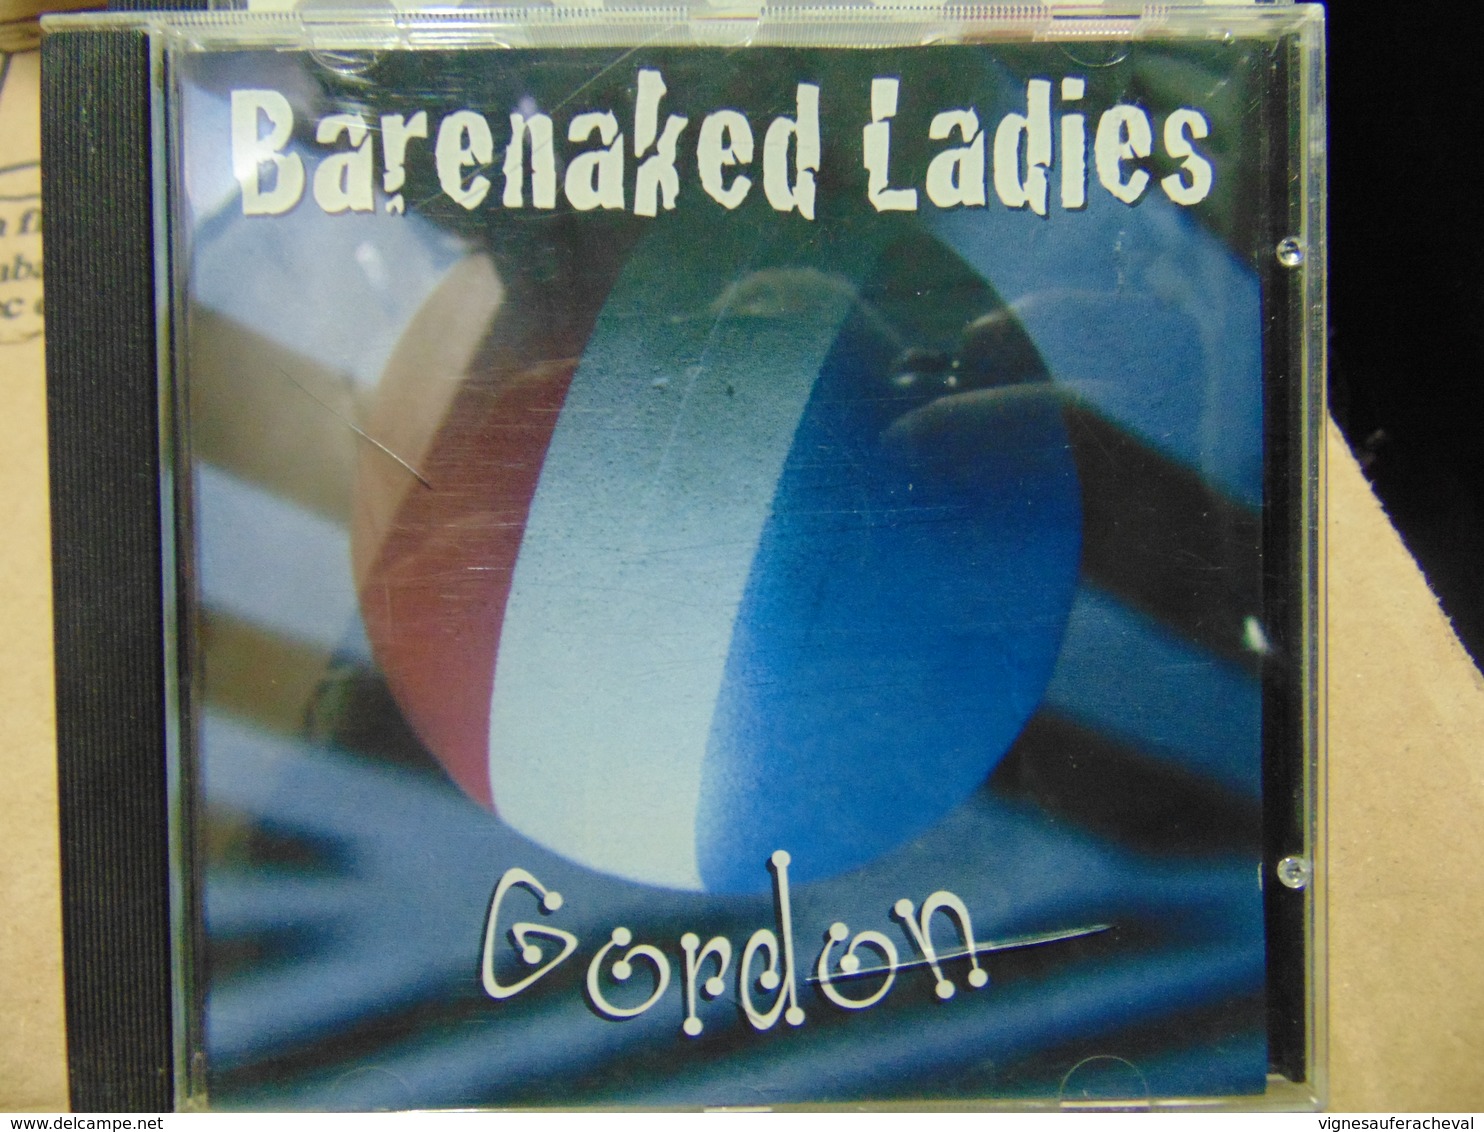 Barenaked Ladies- Gordon - Rap & Hip Hop